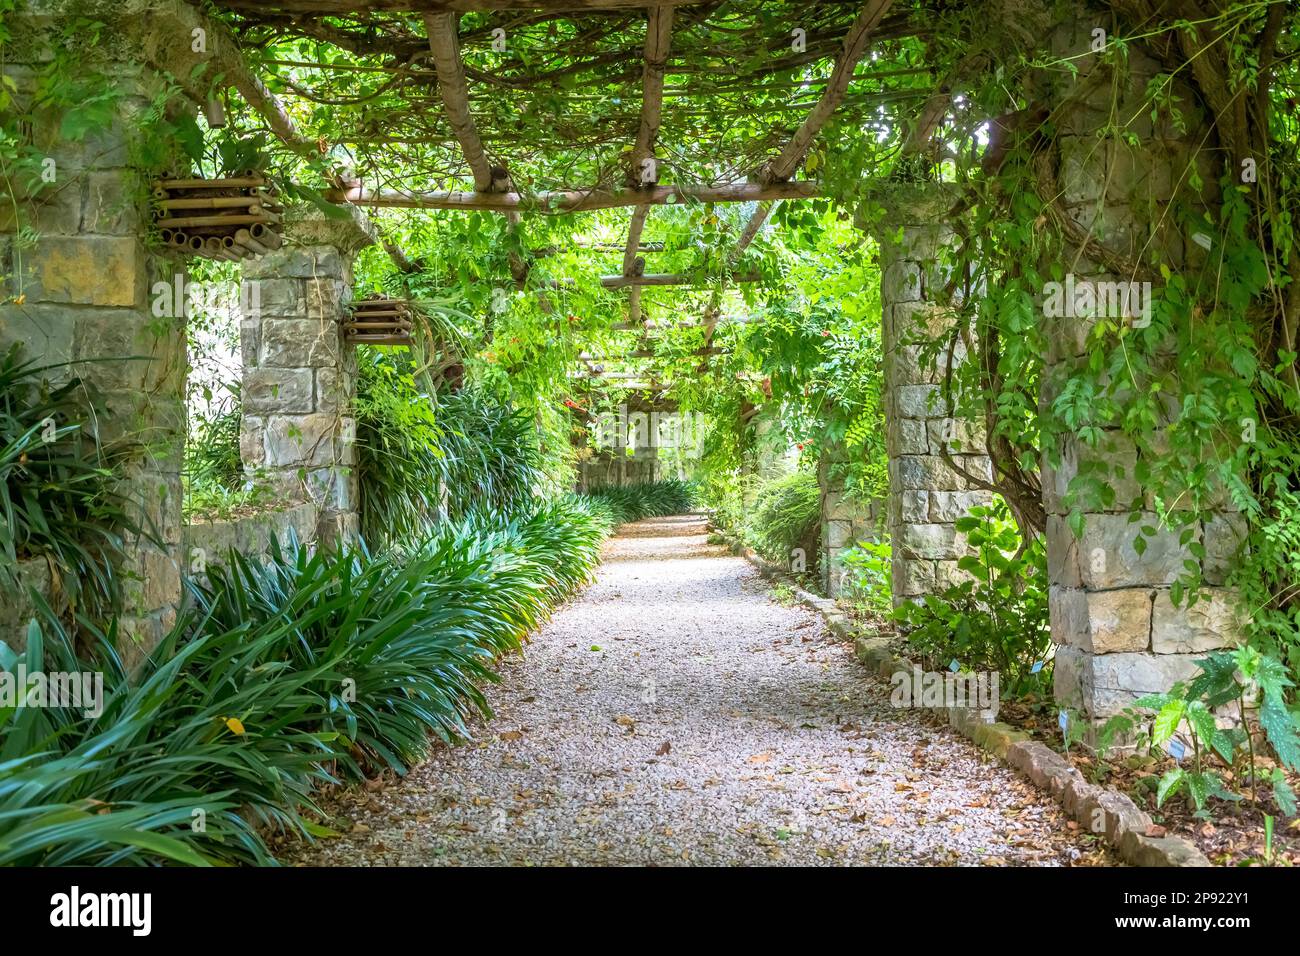 Garten mit Pergola-Struktur in hellen Farben im Spätsommer. Architektur und Design wurden von der Natur inspiriert Stockfoto